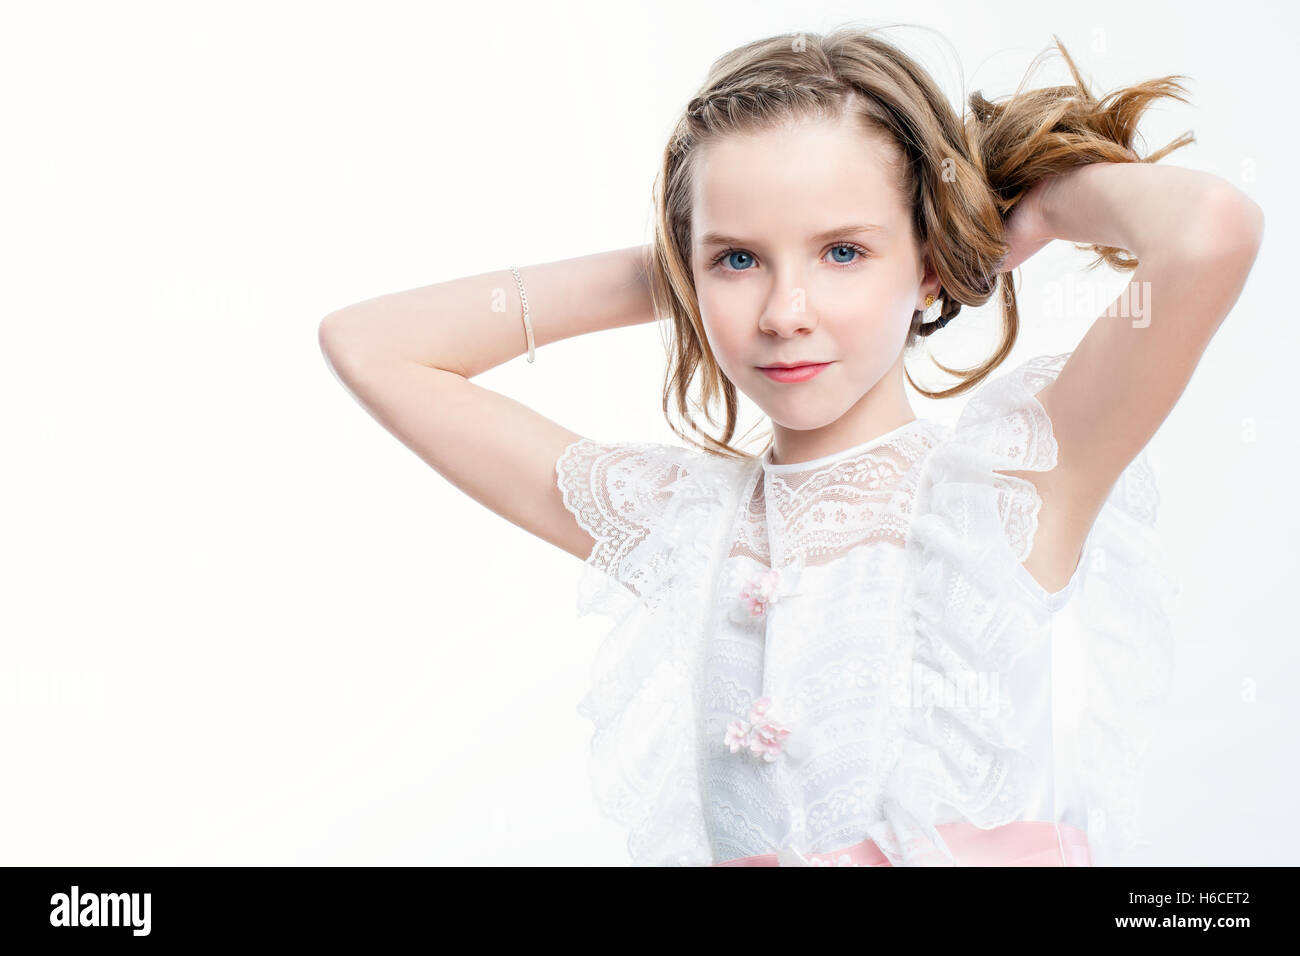 Hautnah Beauty Portrait von attraktiven Kind im weißen Kleid. Stockfoto